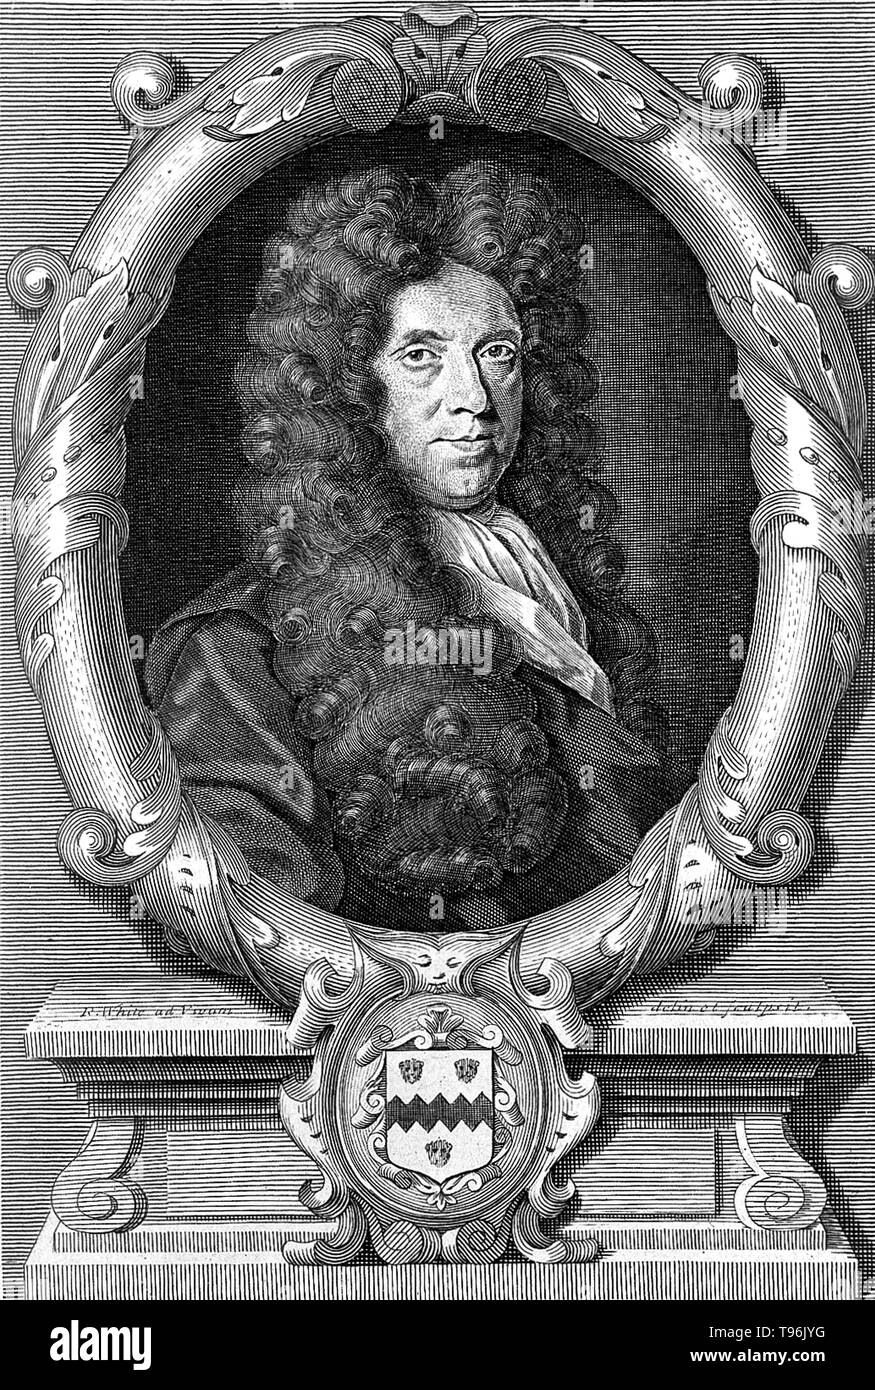 Nehemia Wuchs (September 26, 1641 - März 25, 1712) war ein englischer Anlage Anatom und Physiologe, als der Vater der Pflanze Anatomie bekannt. Im Jahre 1671 nahm er den Grad des Dr. med. an der Universität Leiden. Im Jahre 1672 ließ er sich in London, und bald eine umfangreiche Praxis als Arzt. Im Jahre 1682 veröffentlichte er die Anatomie der Pflanzen, die auch weit war eine Sammlung von früheren Publikationen. Stockfoto